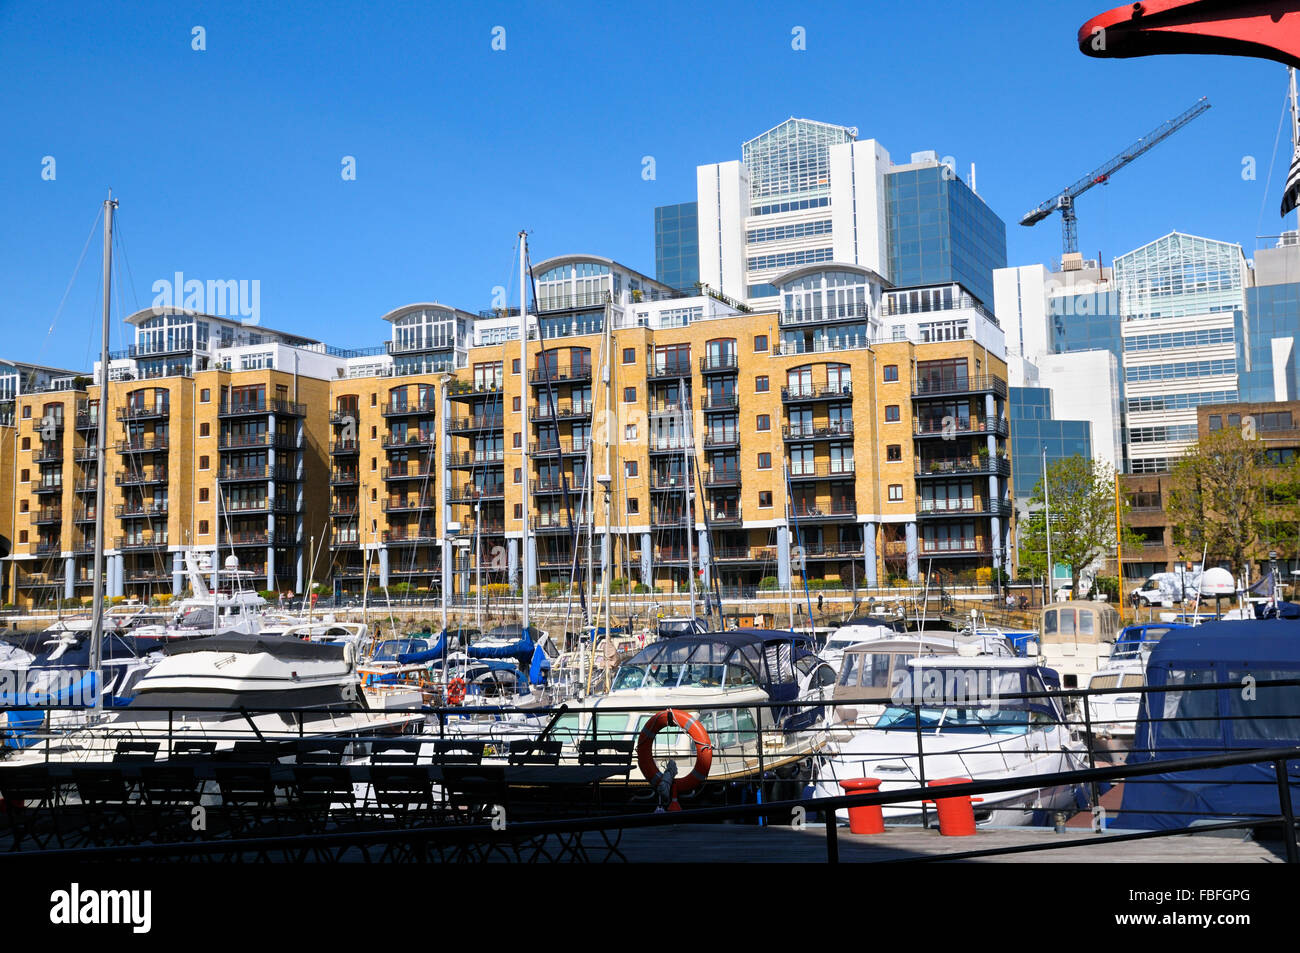 St Katharine Docks, London, England, UK Stock Photo